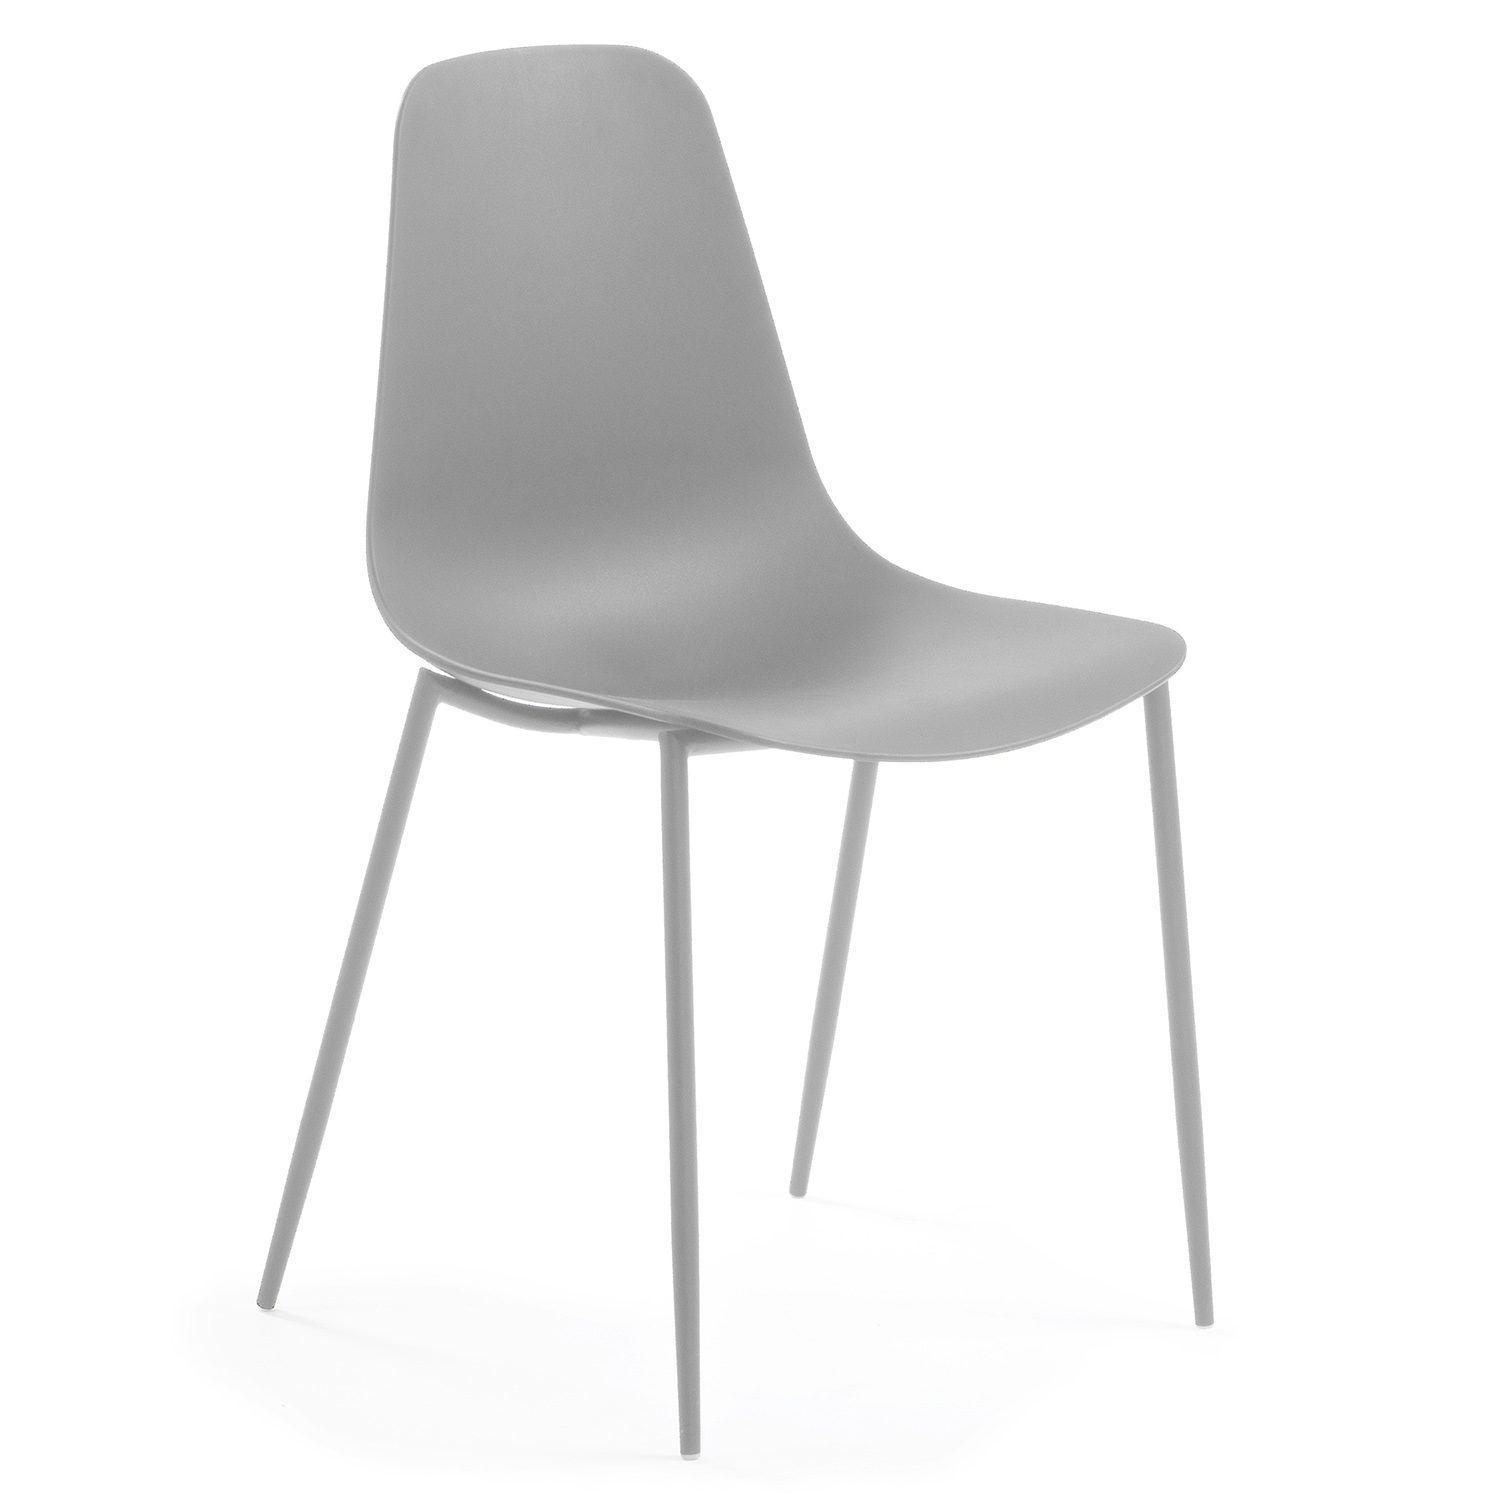 LAFORMA Wassu spisebordsstol - grå plastik og stål